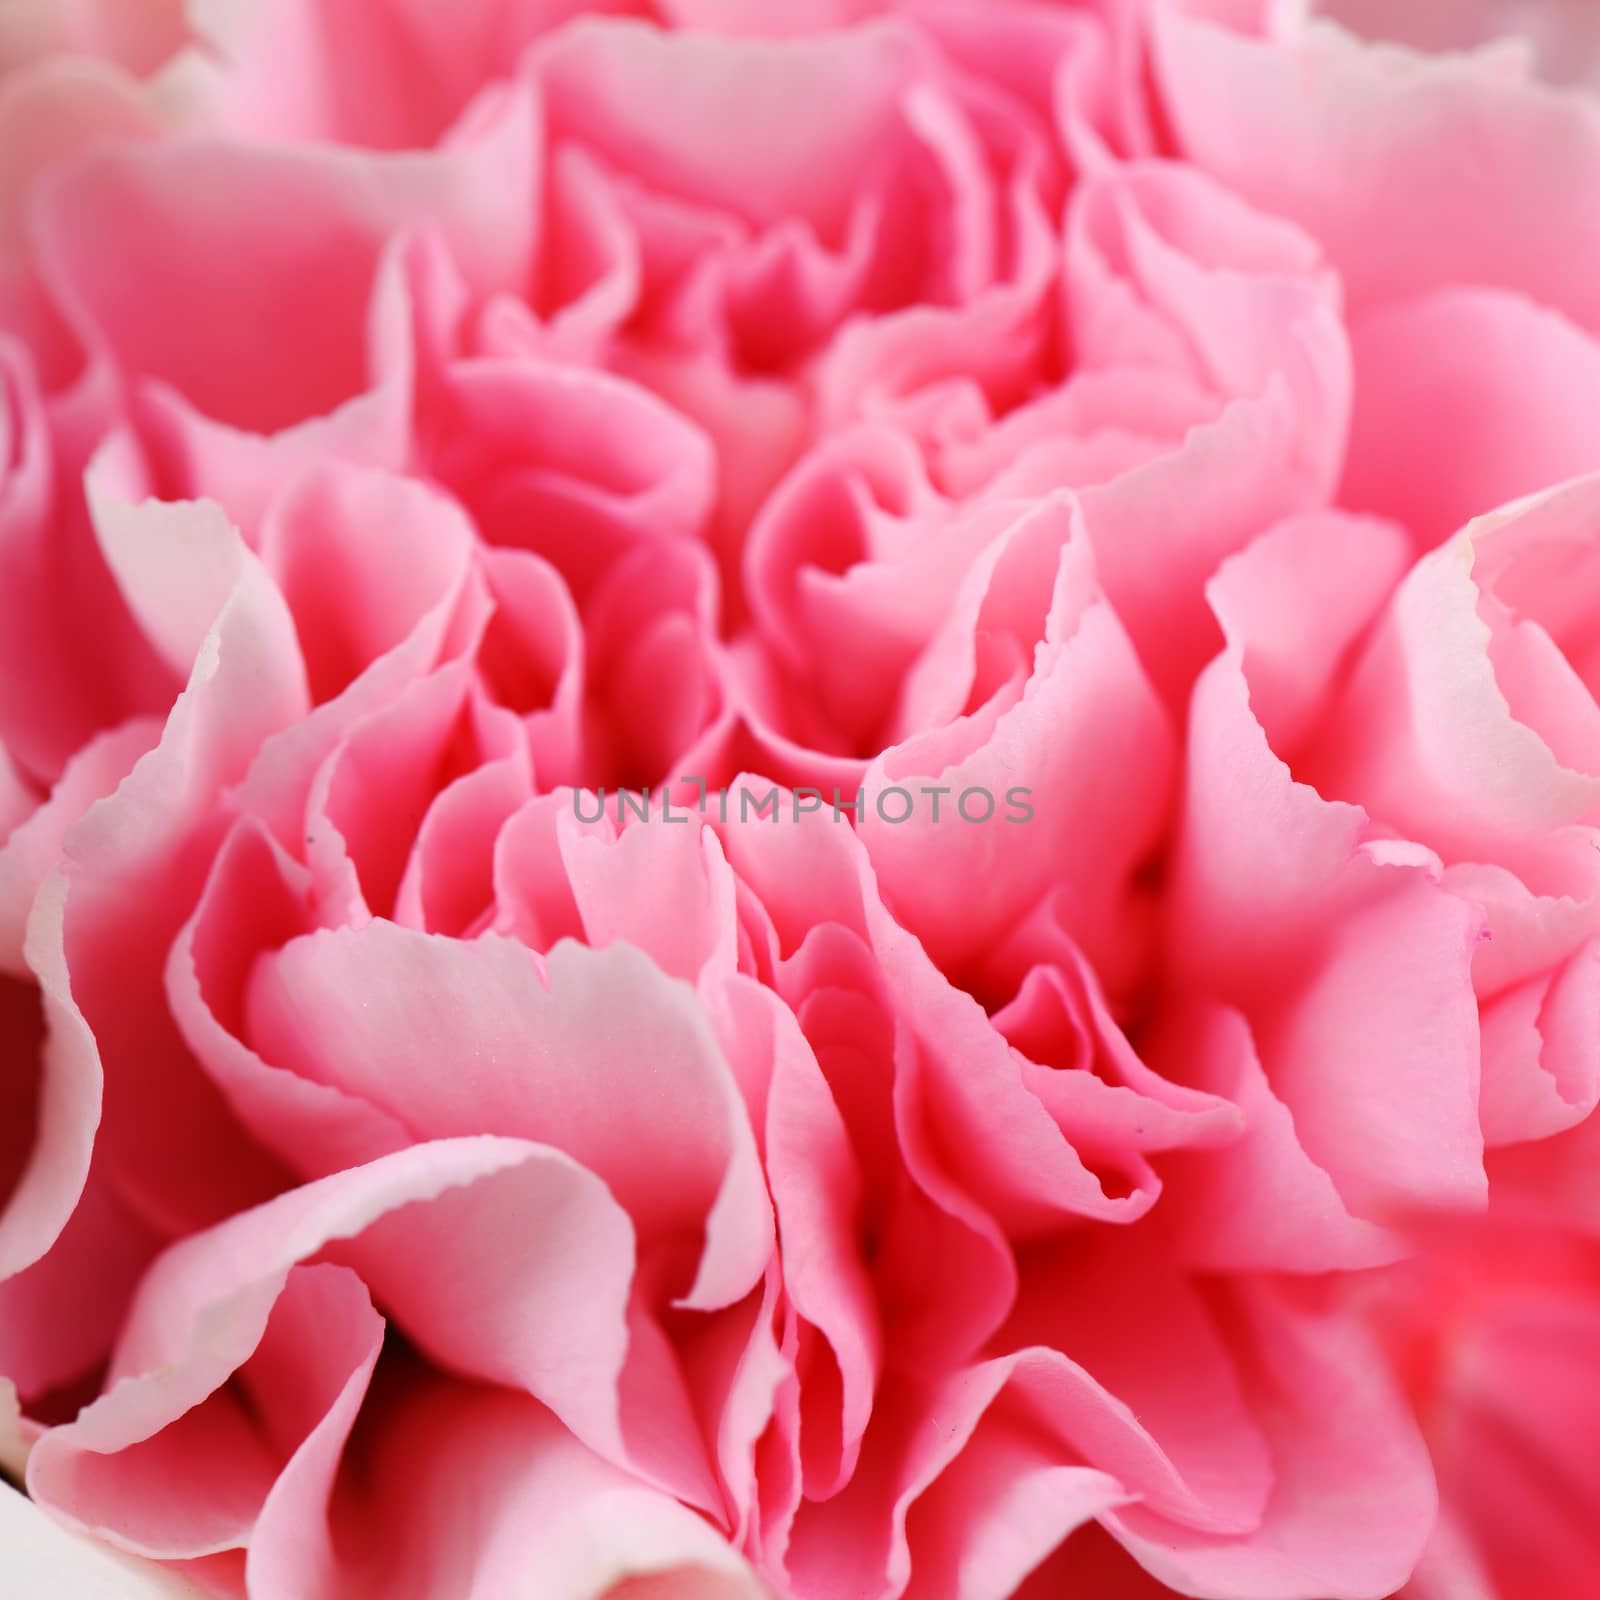 Pink Carnation by antpkr